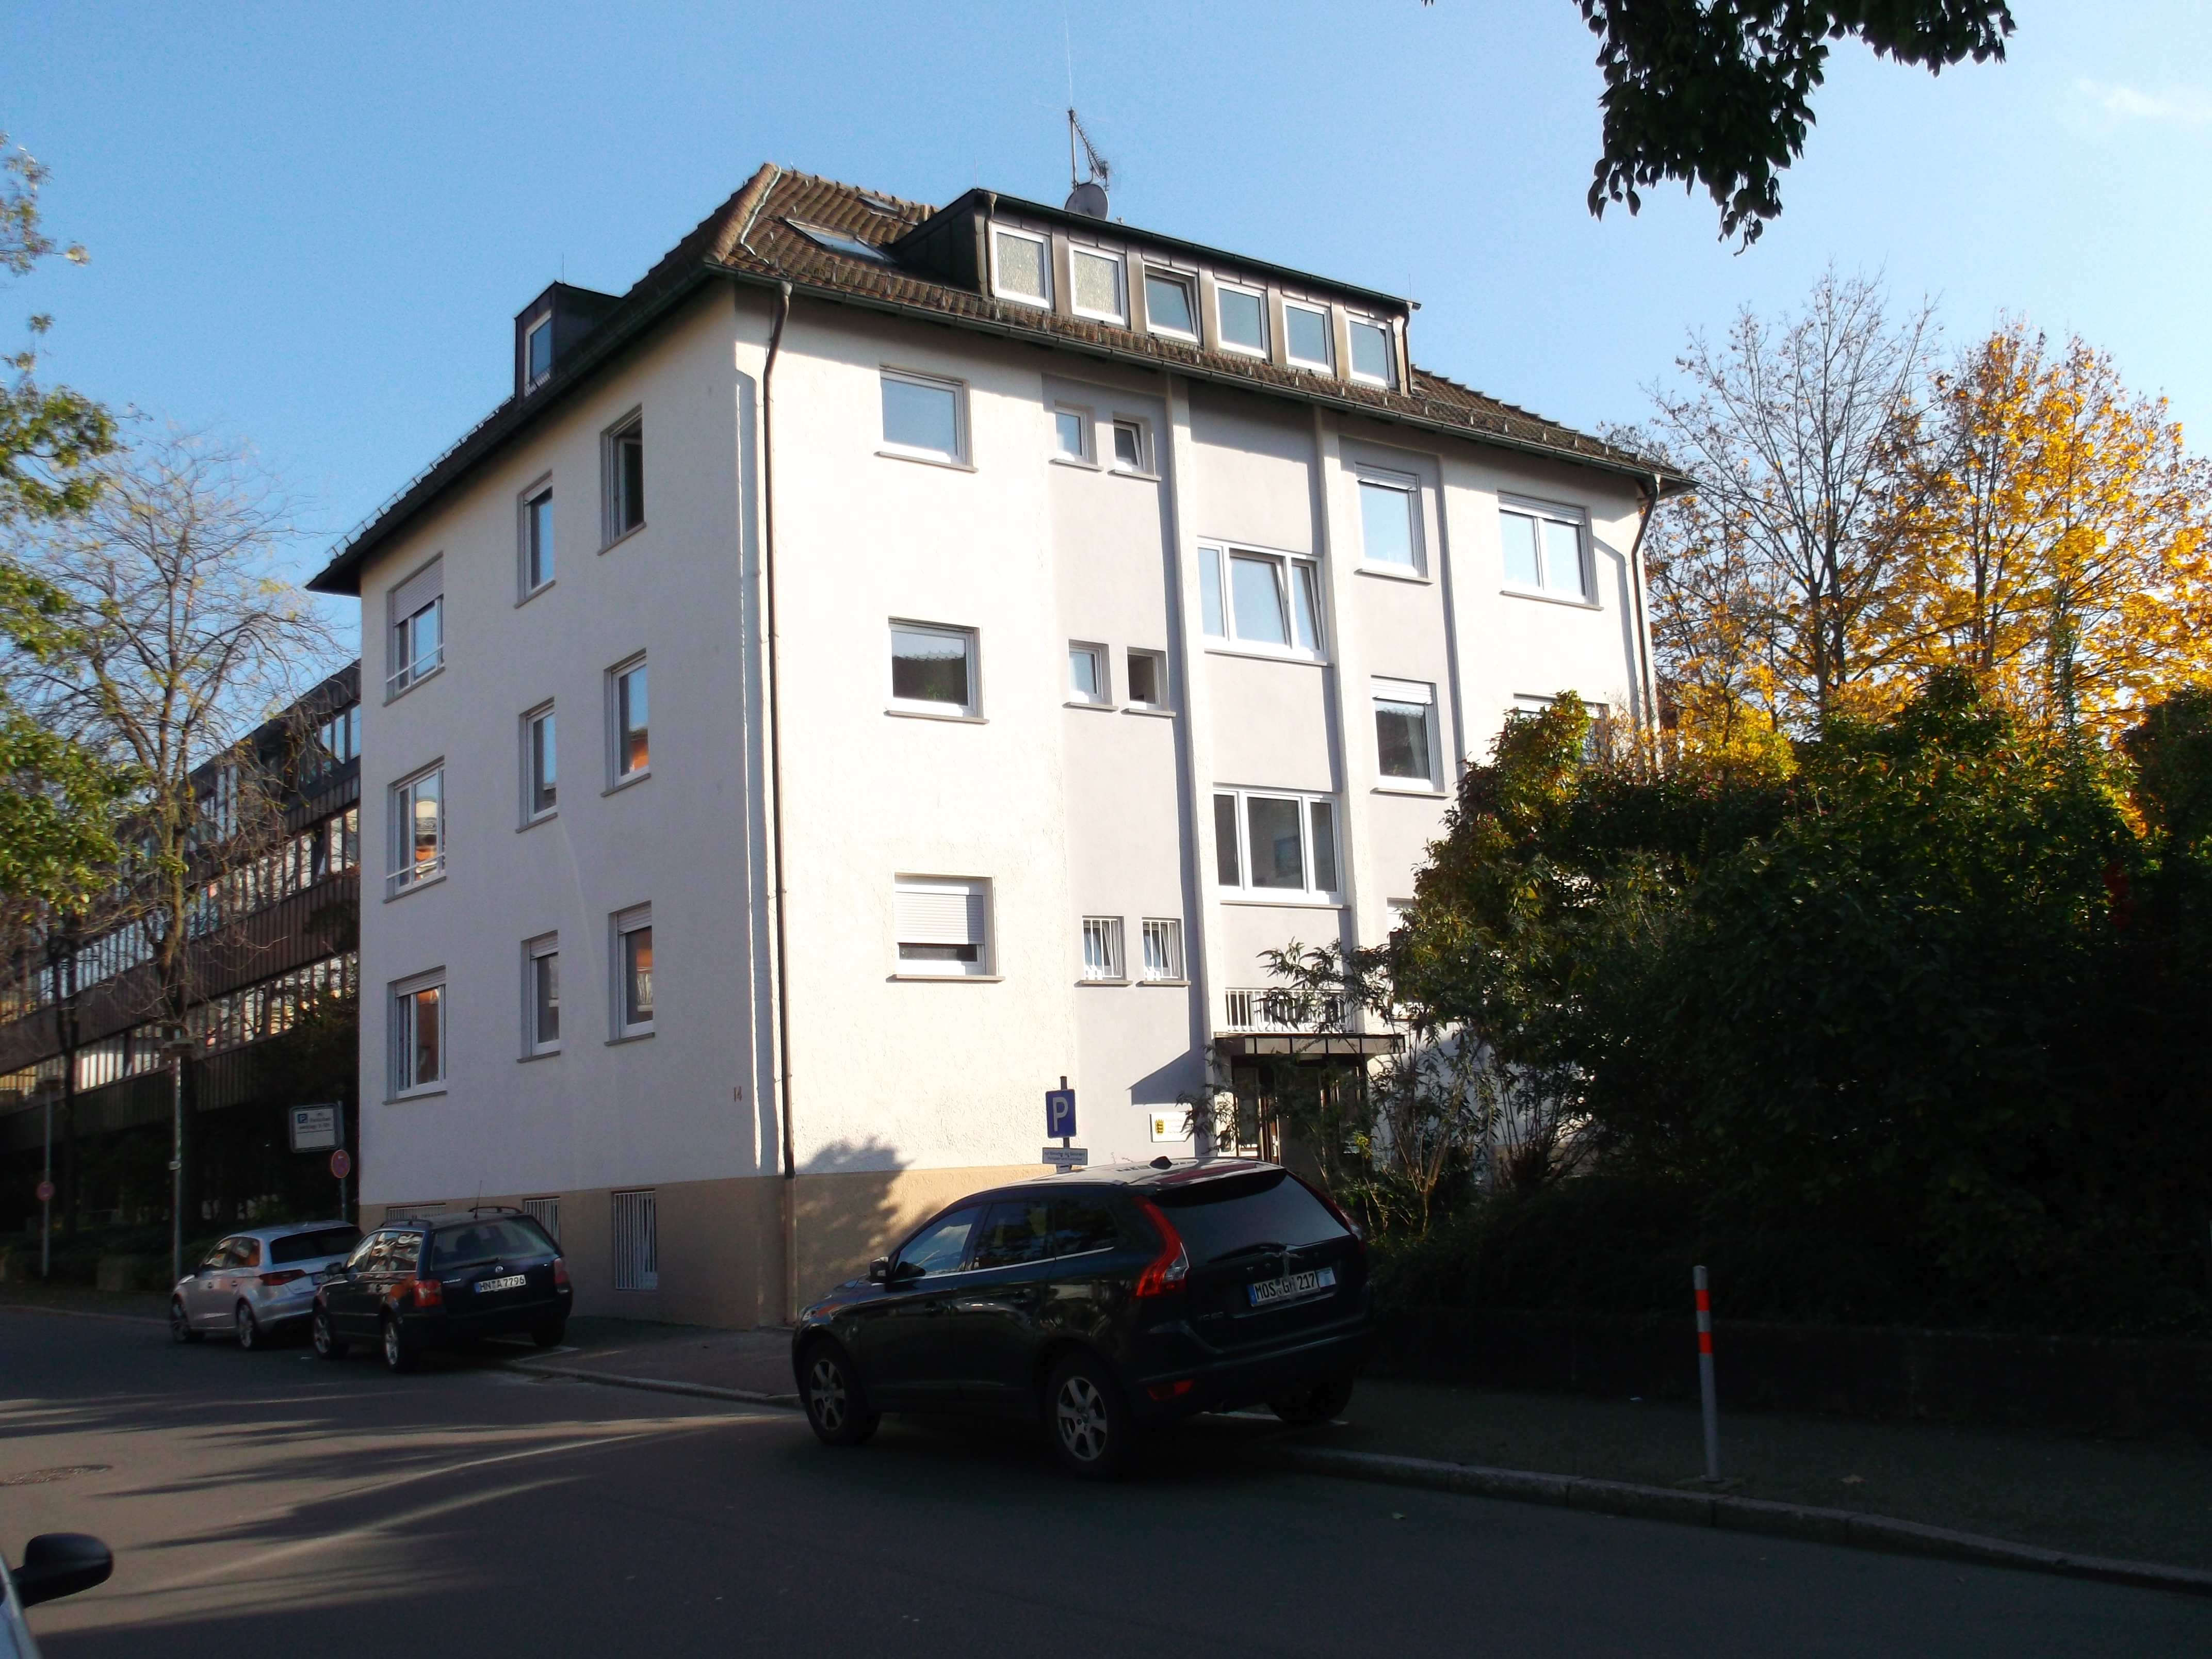 Bild des Gebäudes des Staatlichen Schulamts Heilbronn